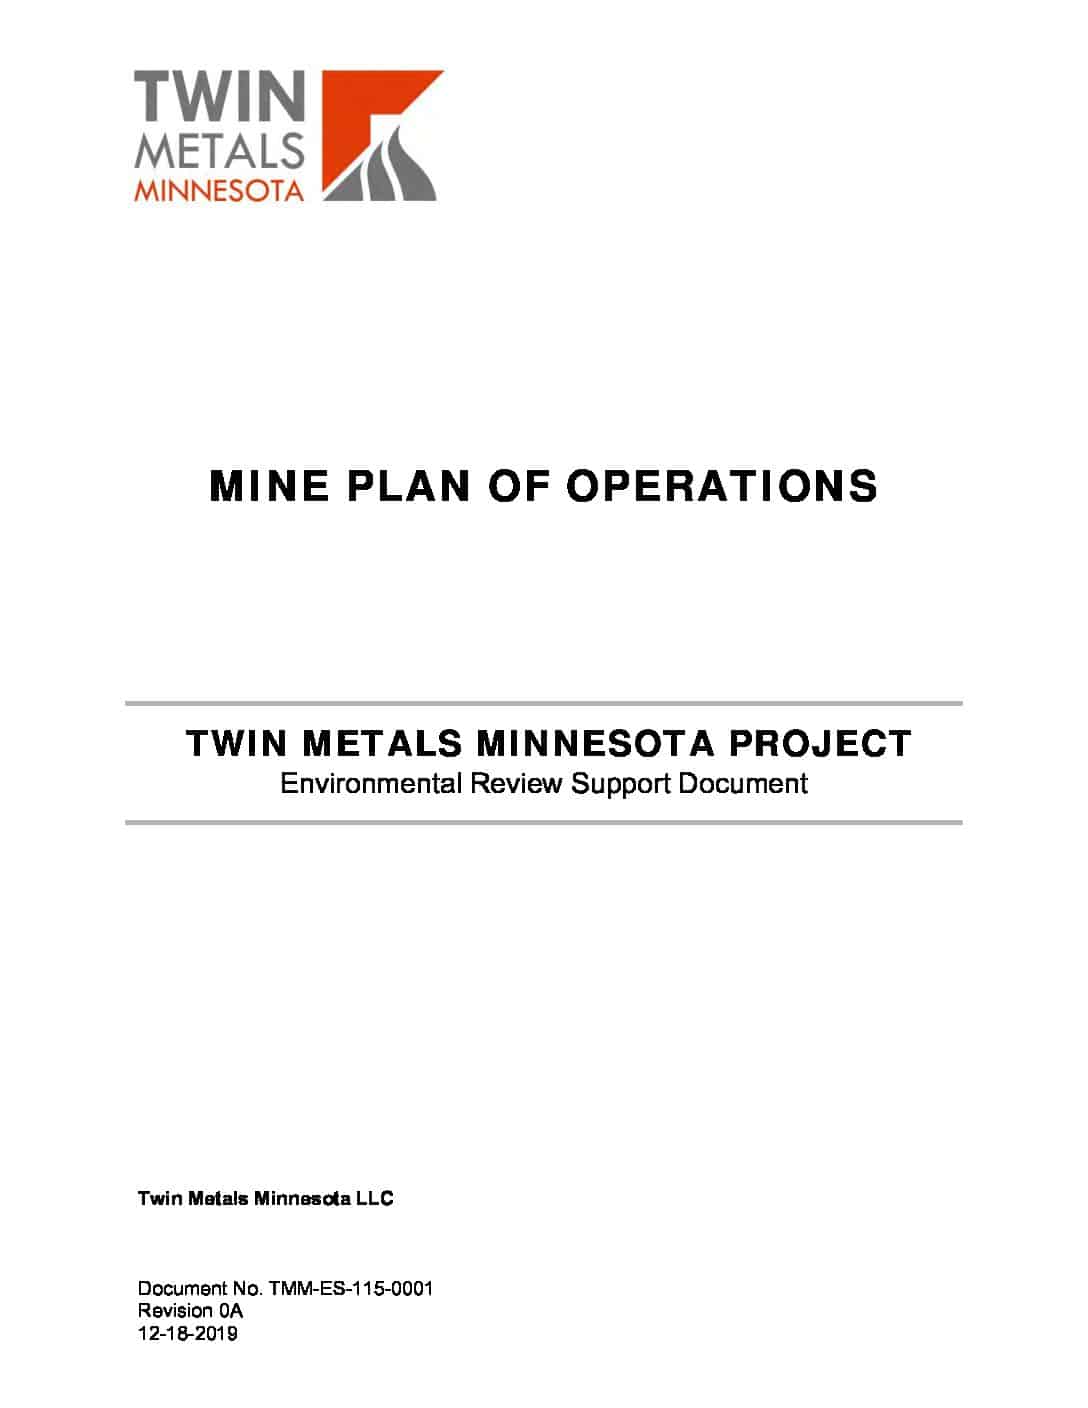 Twin Metals Minnesota Mine Plan of Operations